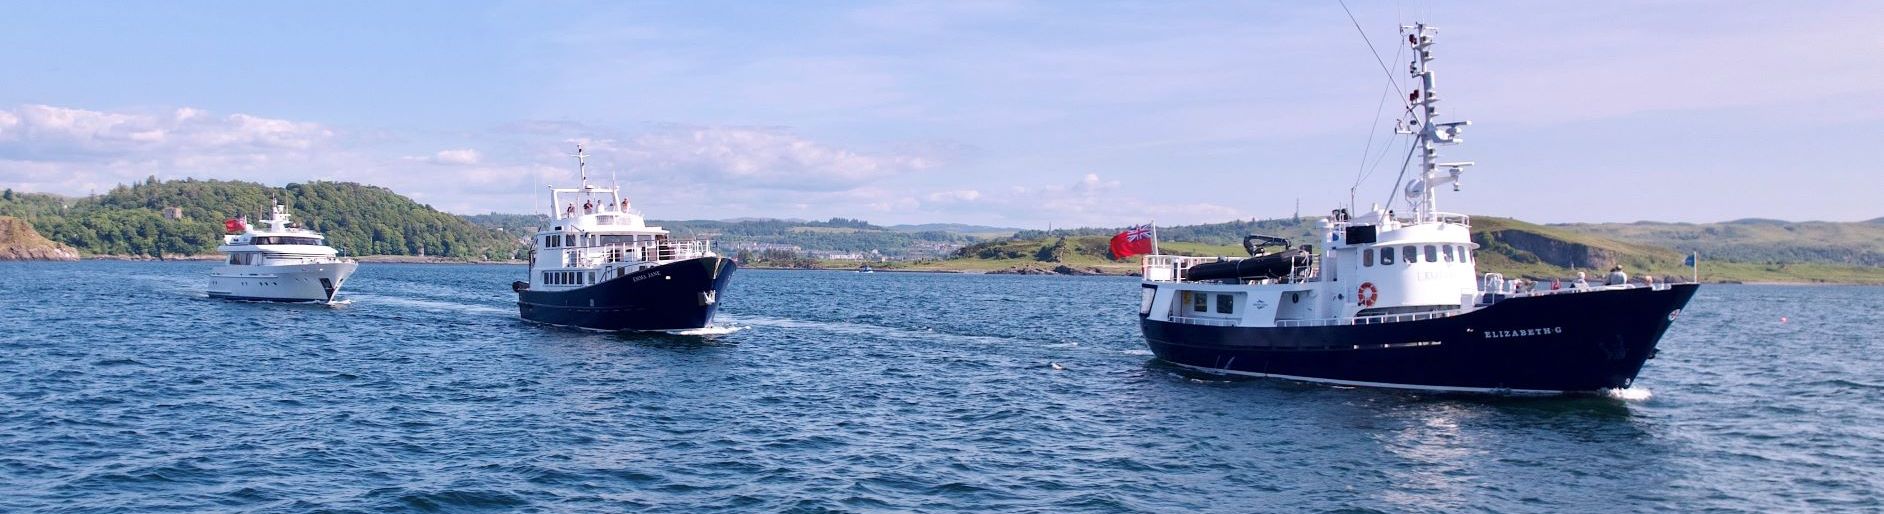 Hebrides Cruises fleet of three ocean going vessels